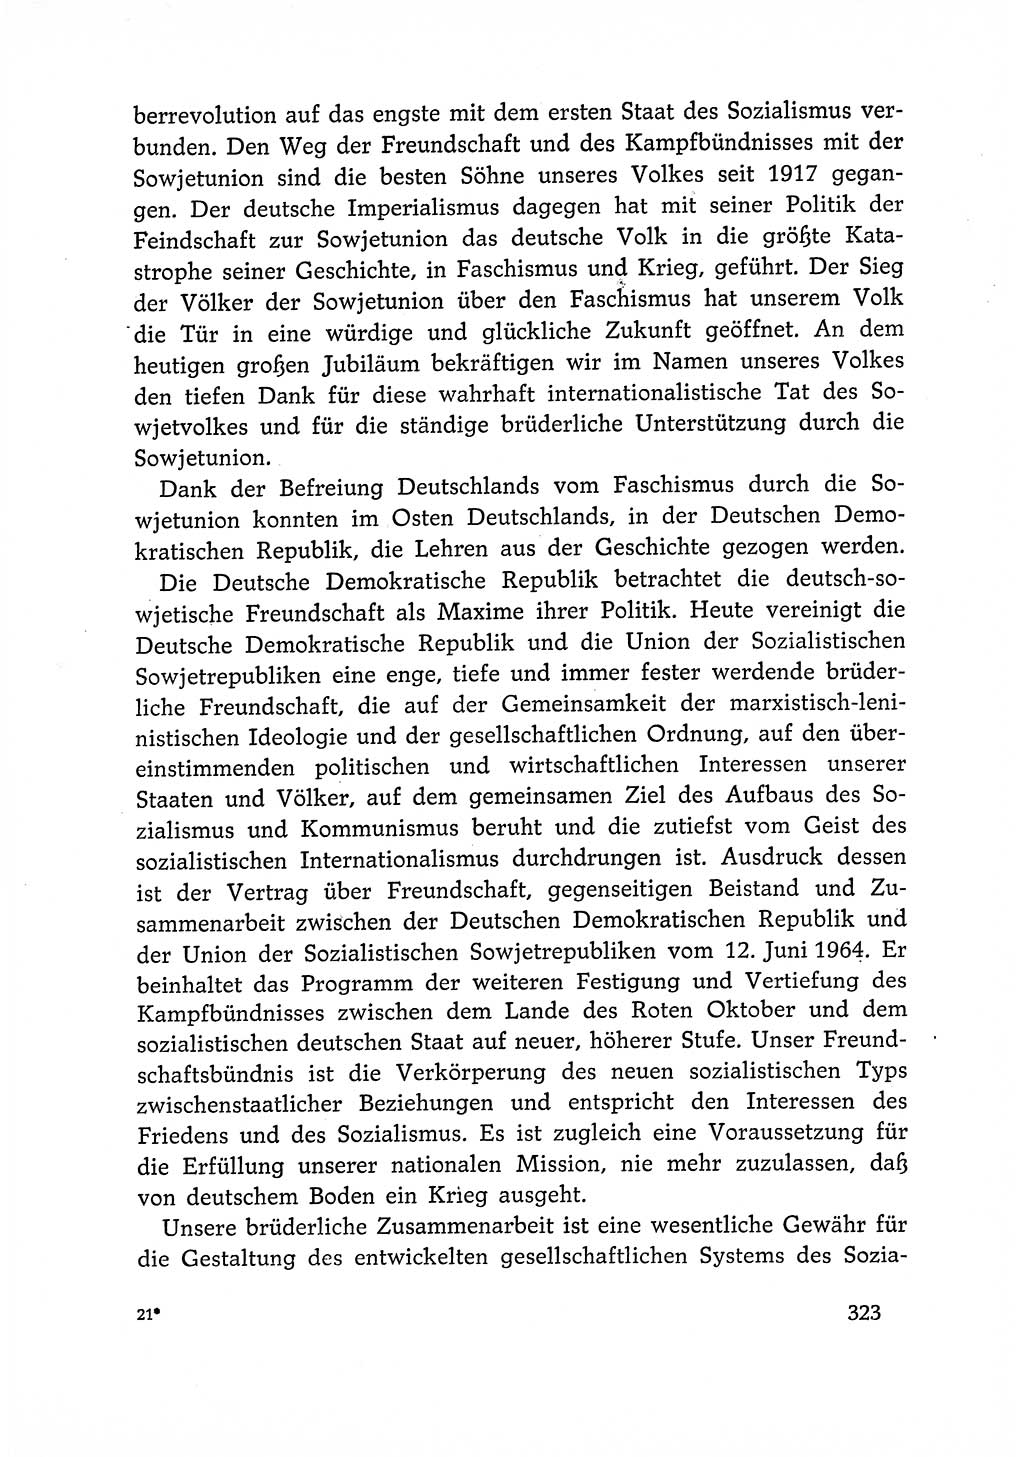 Dokumente der Sozialistischen Einheitspartei Deutschlands (SED) [Deutsche Demokratische Republik (DDR)] 1966-1967, Seite 323 (Dok. SED DDR 1966-1967, S. 323)